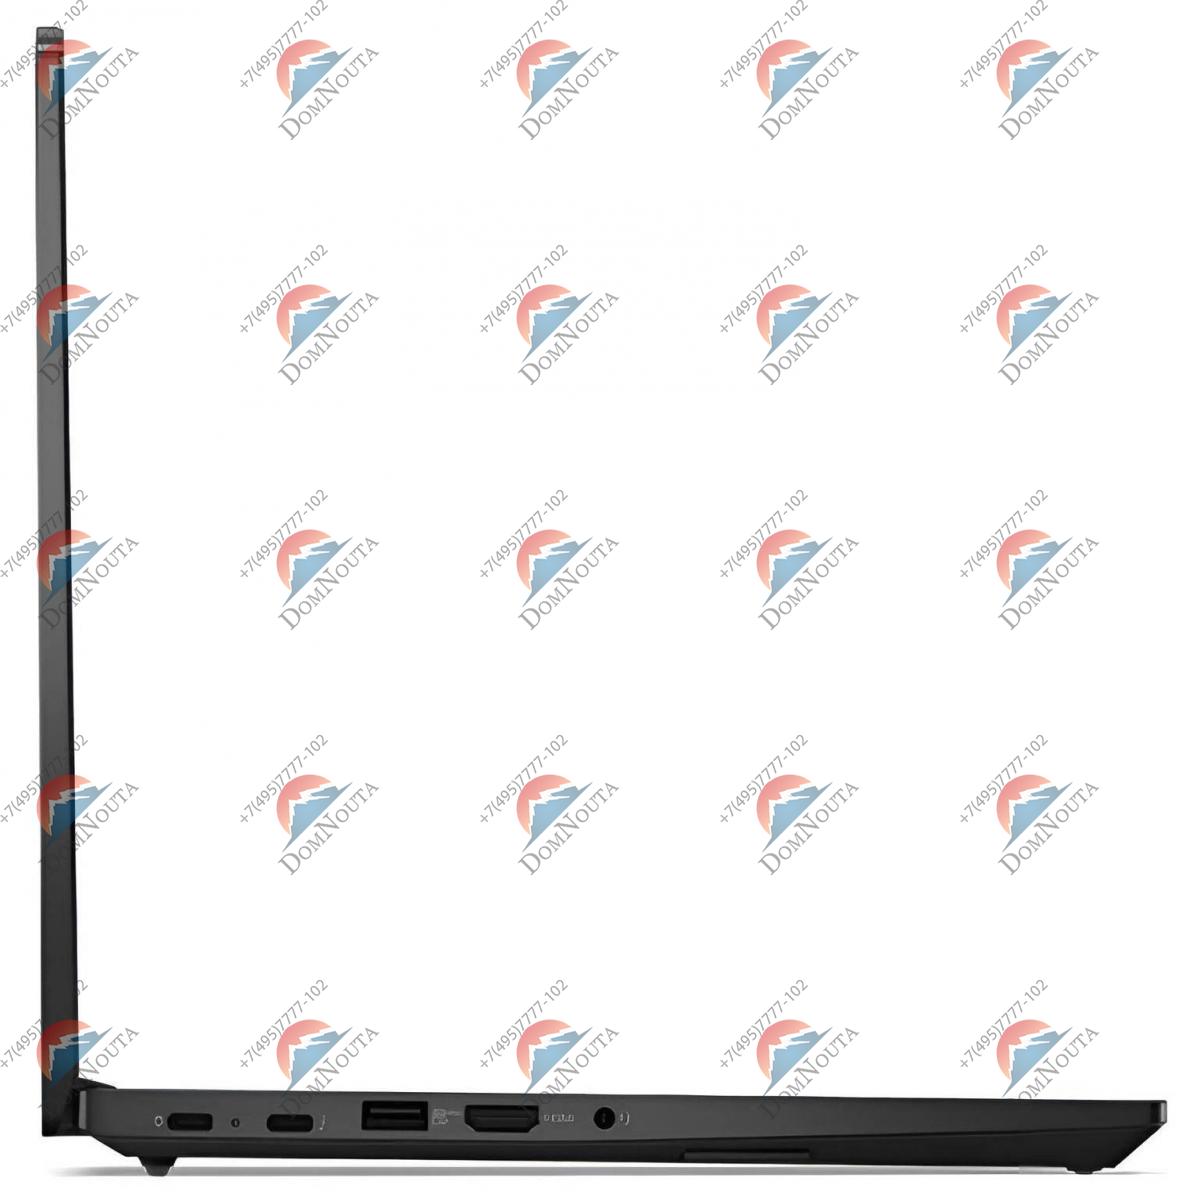 Ноутбук Lenovo ThinkPad E14 5